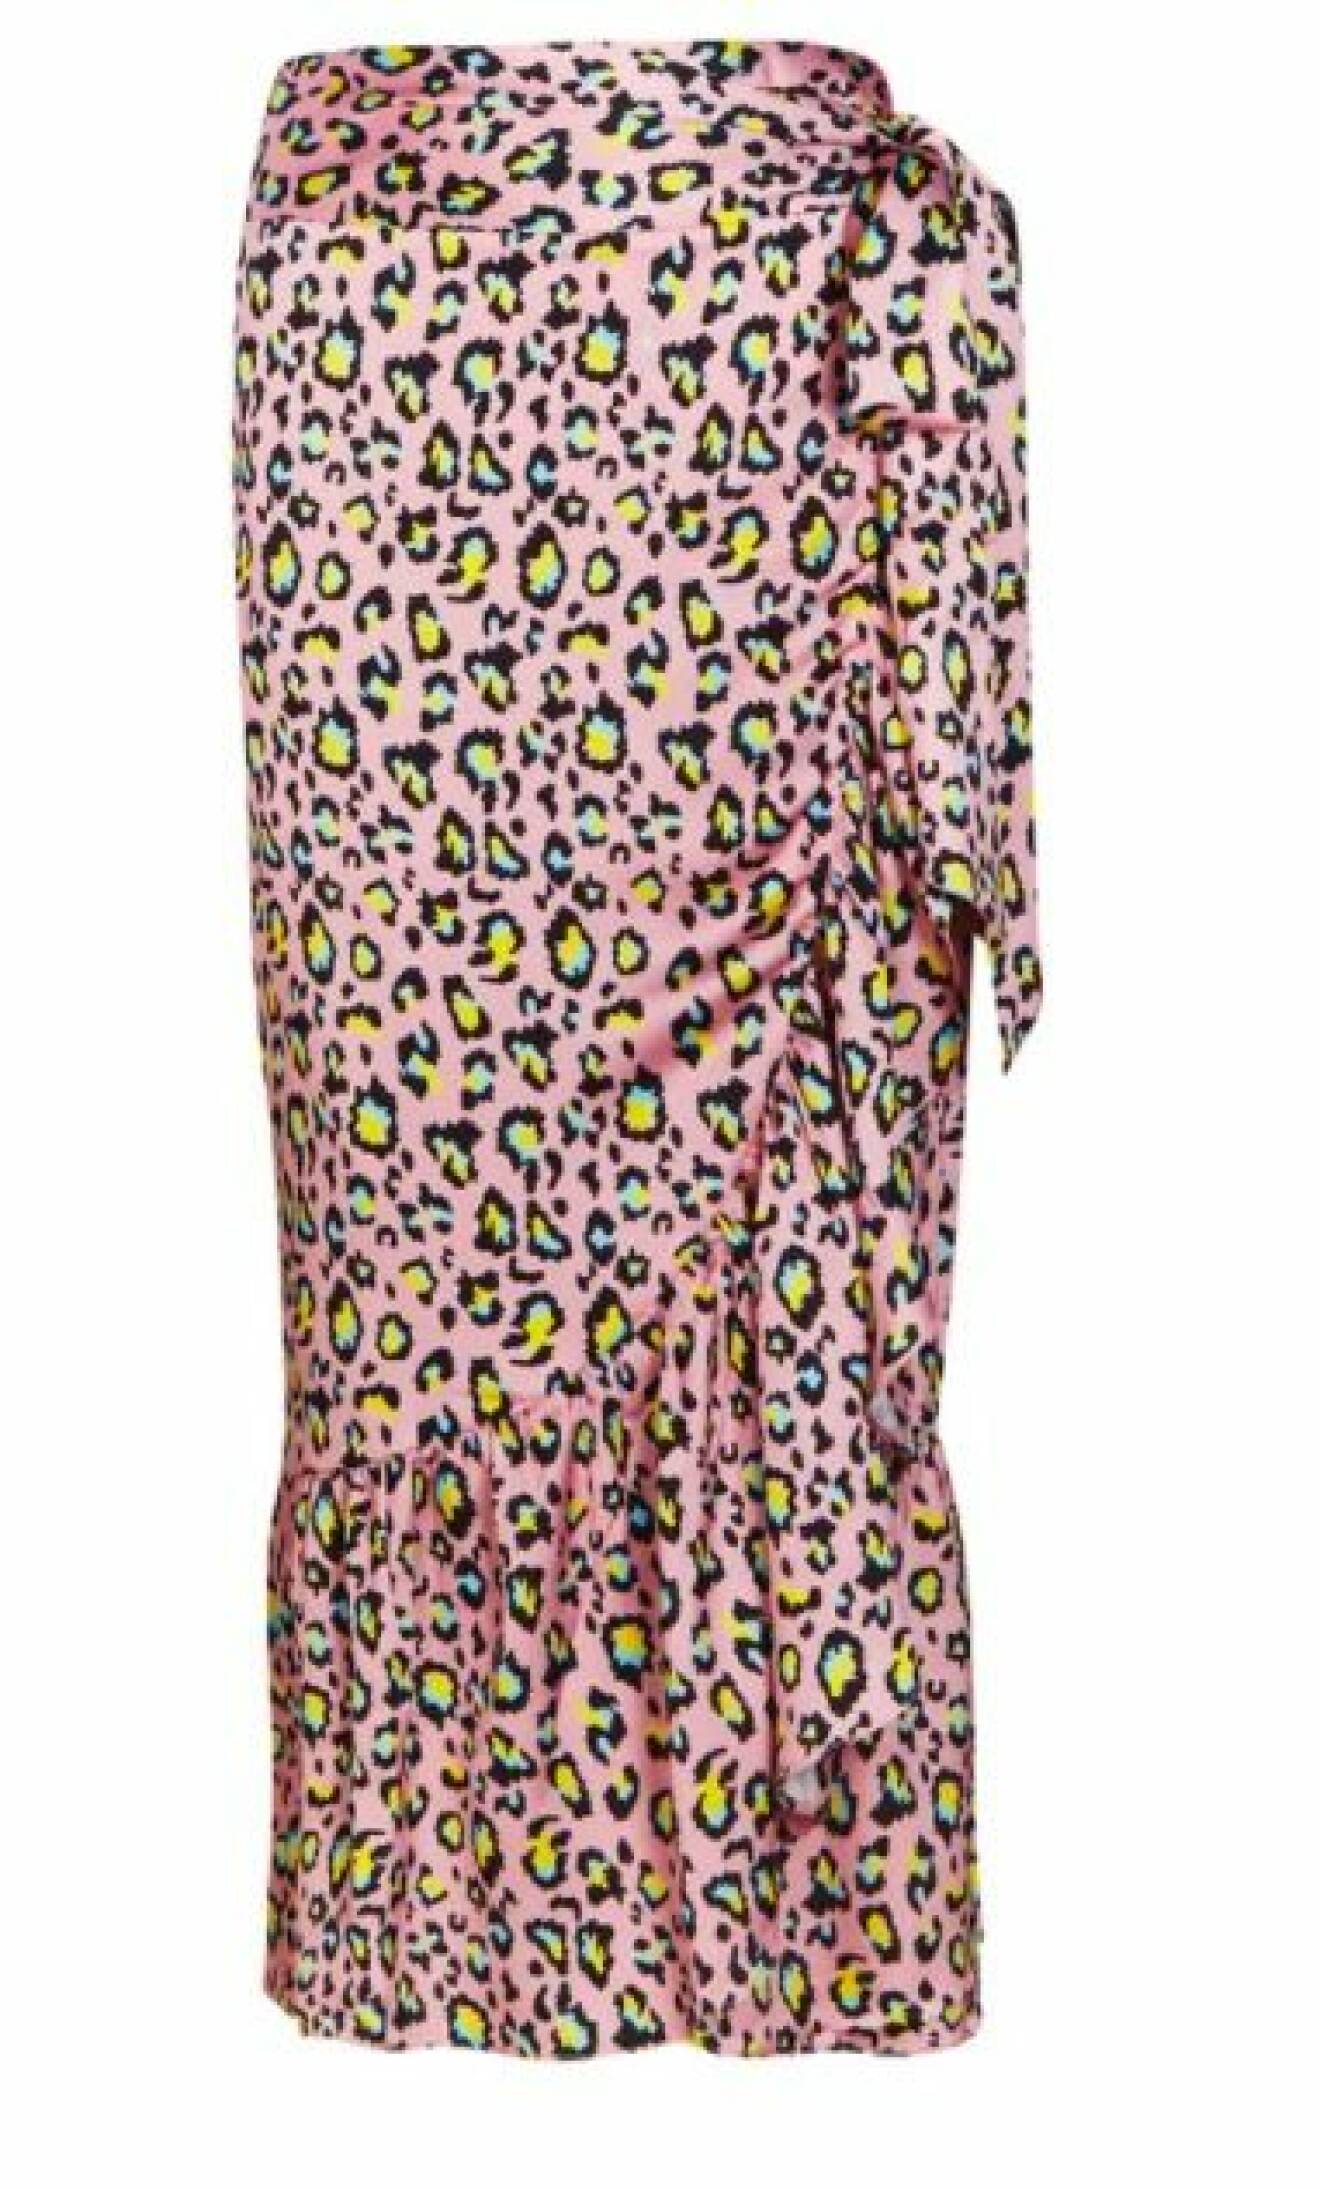 Leopardmönstrad maxikjol med knyt i midjan. Kjolen är ljusrosa med fläckar i svart, gult och mintgrönt. Kjol från Never fully dressed.